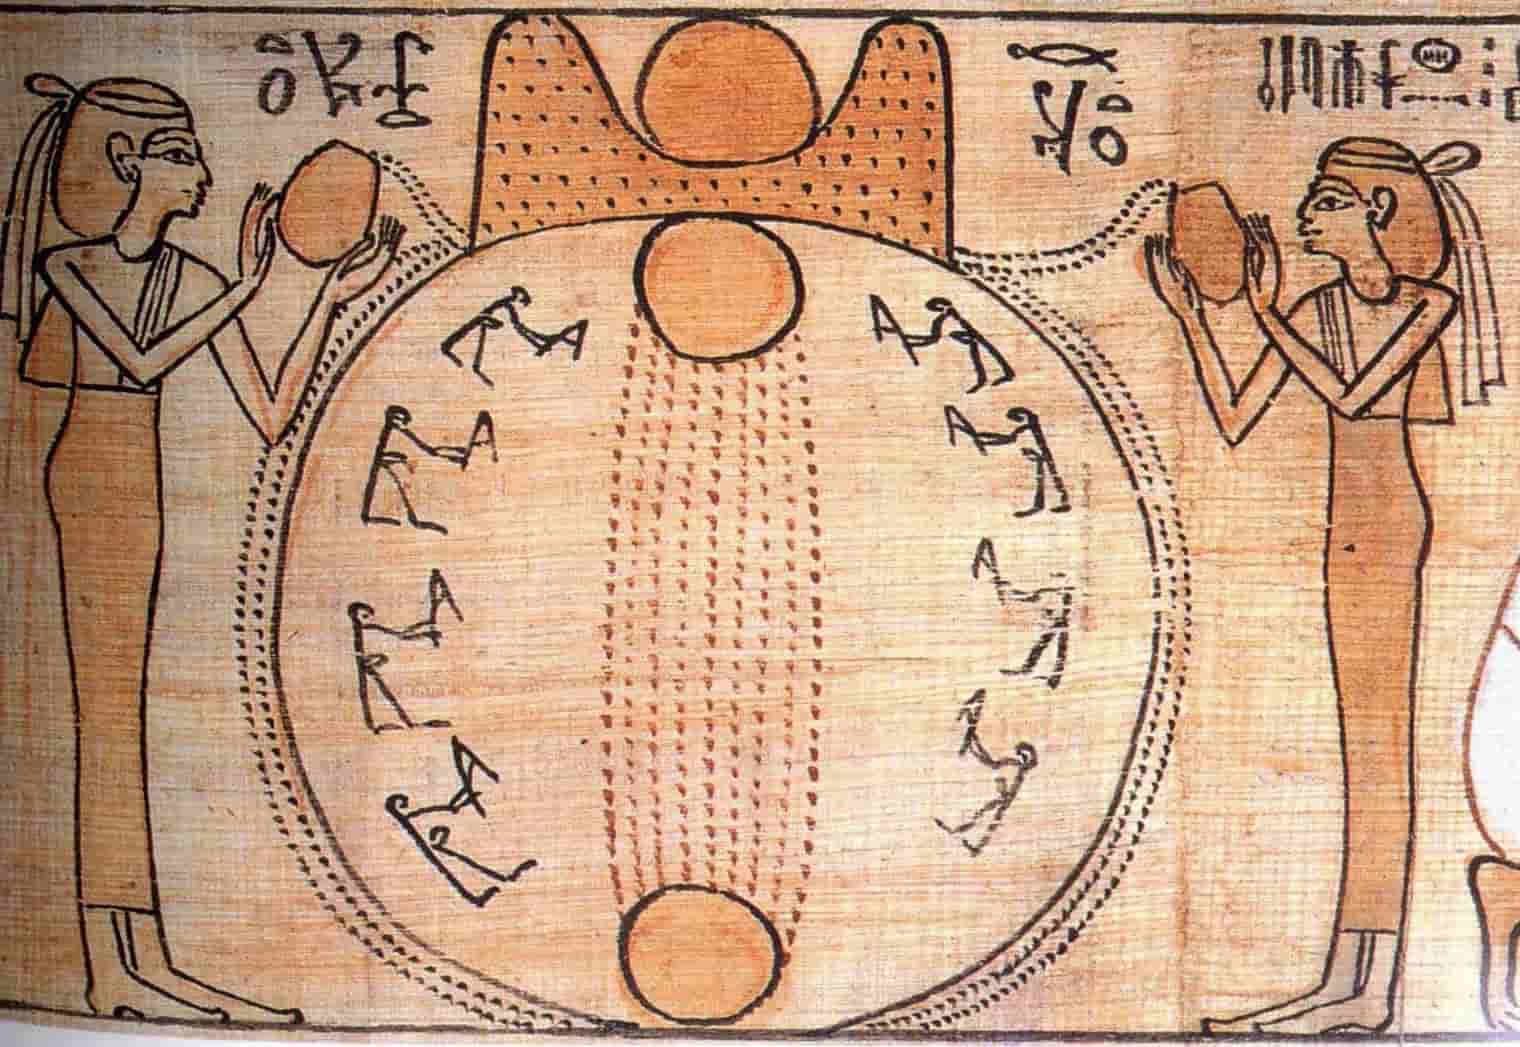 Το Ωόν (αυγό) Αρχετυπικό Σύμβολο Γέννησης του Κόσμου, σε διάφορες παραδόσεις στον κόσμο.